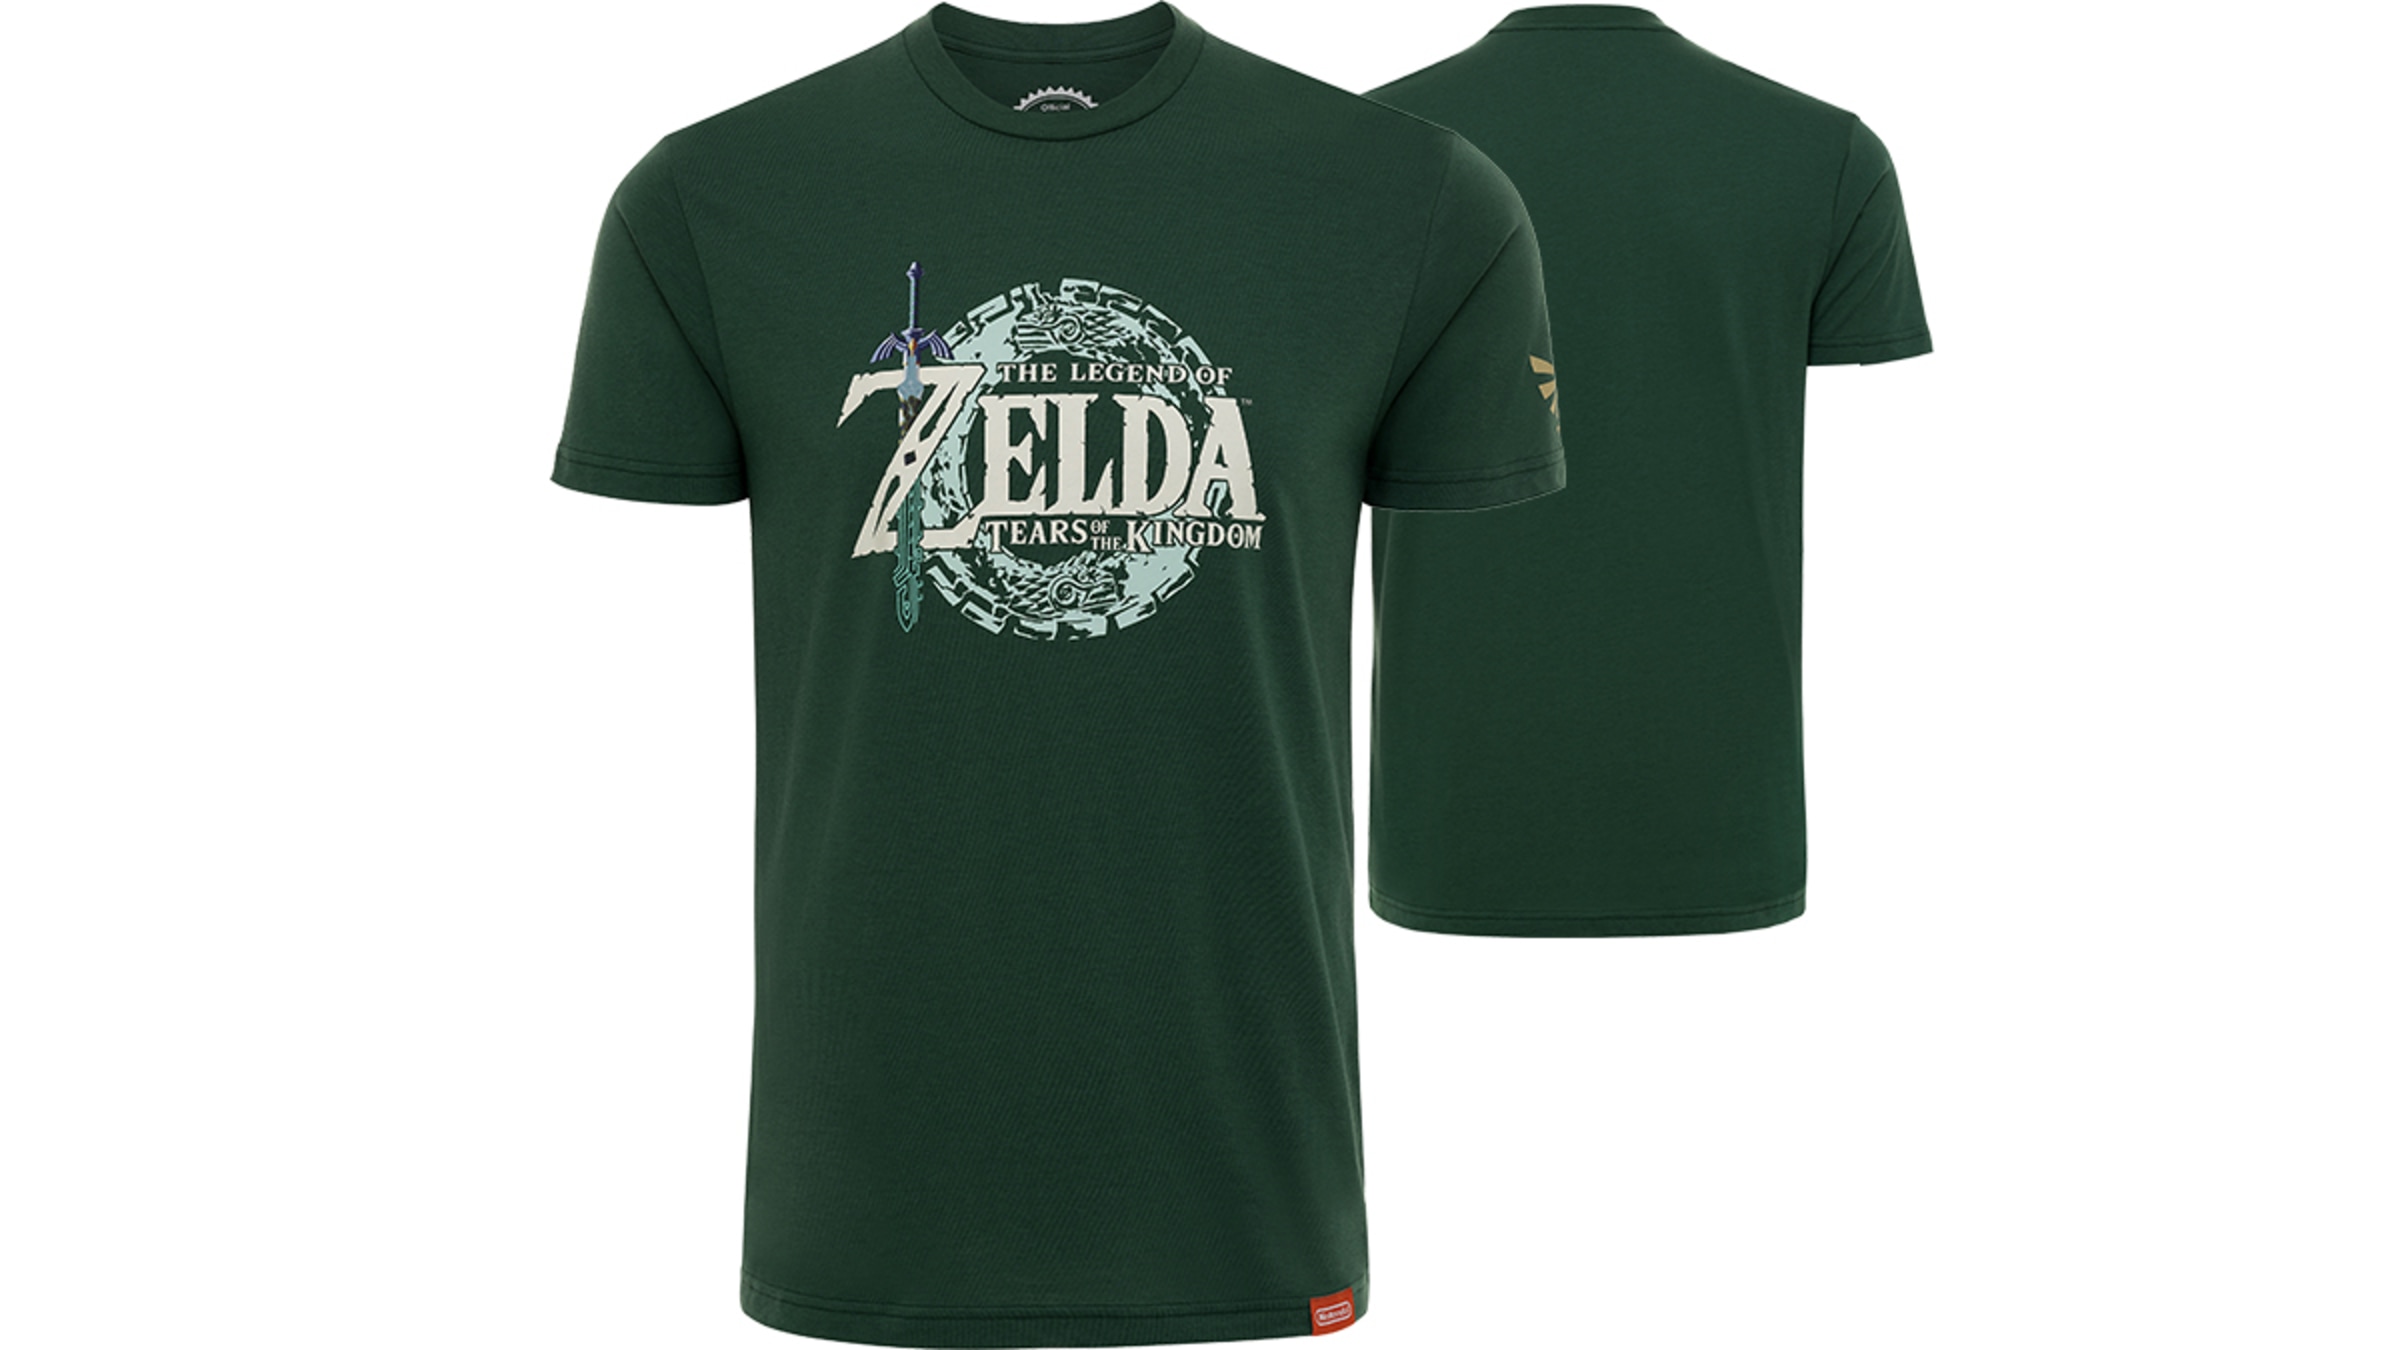 The Legend of Zelda games - My Nintendo Store - Nintendo Official Site